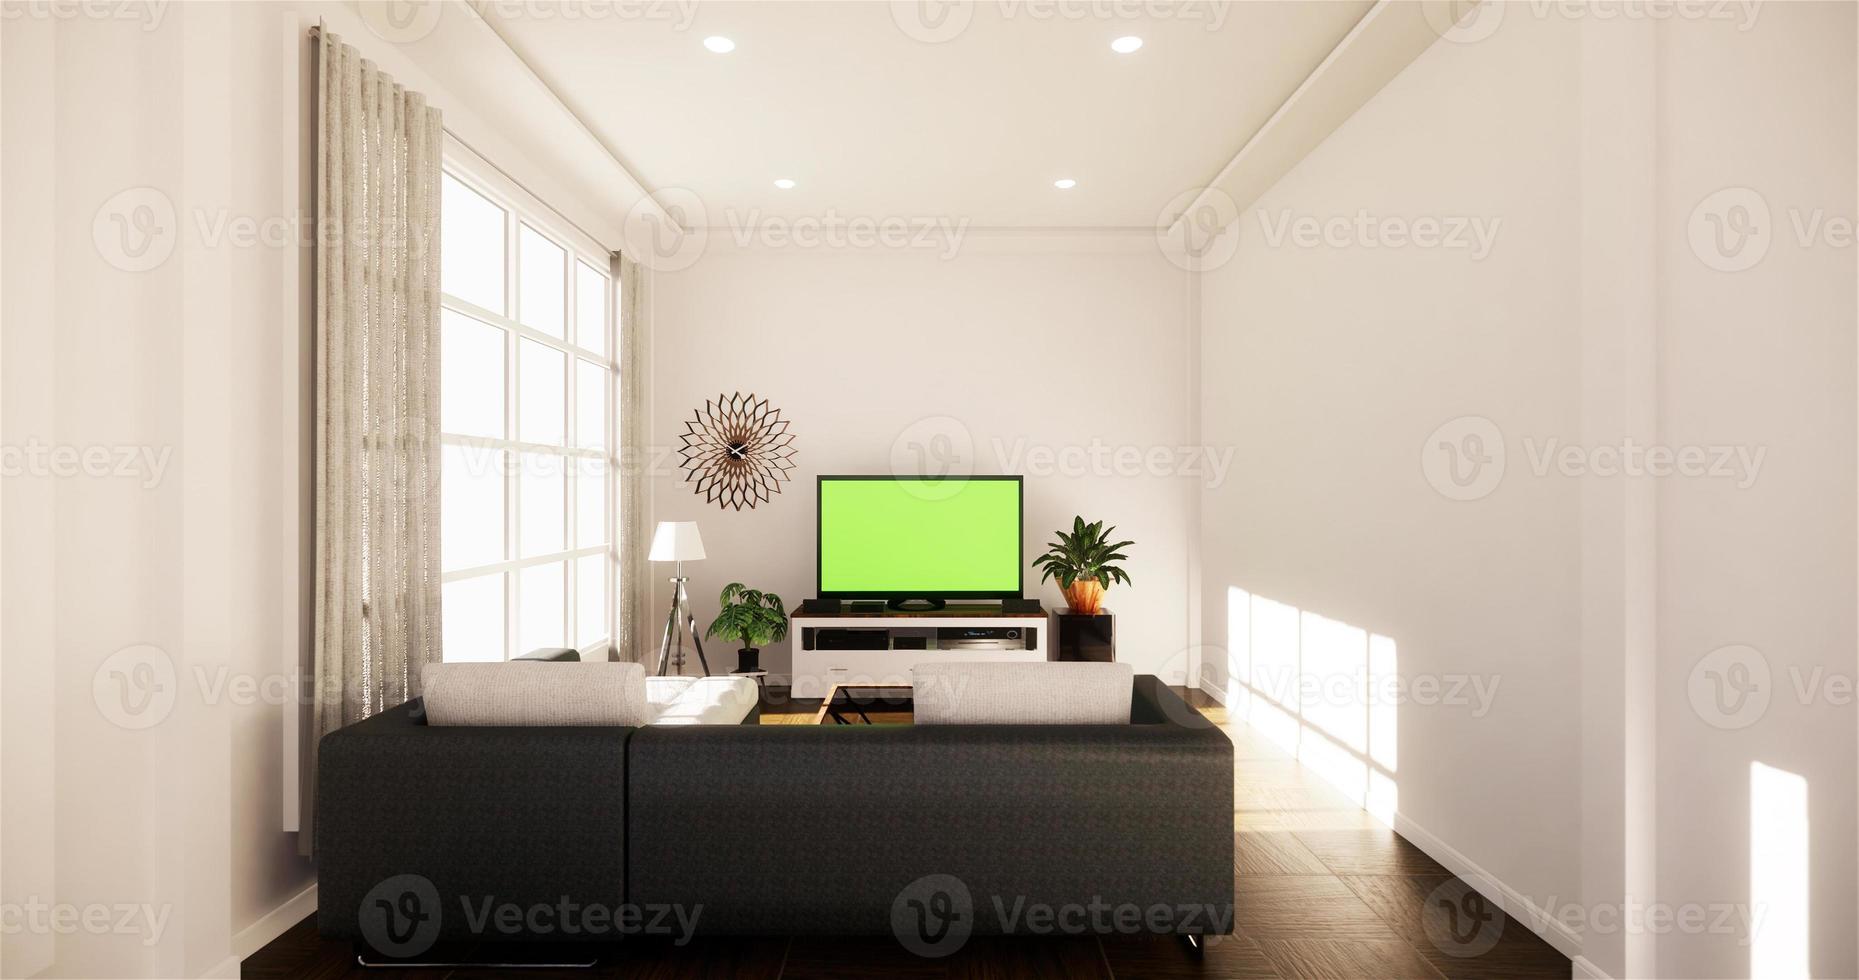 Maqueta de Smart TV con pantalla negra en blanco colgada en la decoración del gabinete, estilo moderno de sala de estar zen. Representación 3d foto